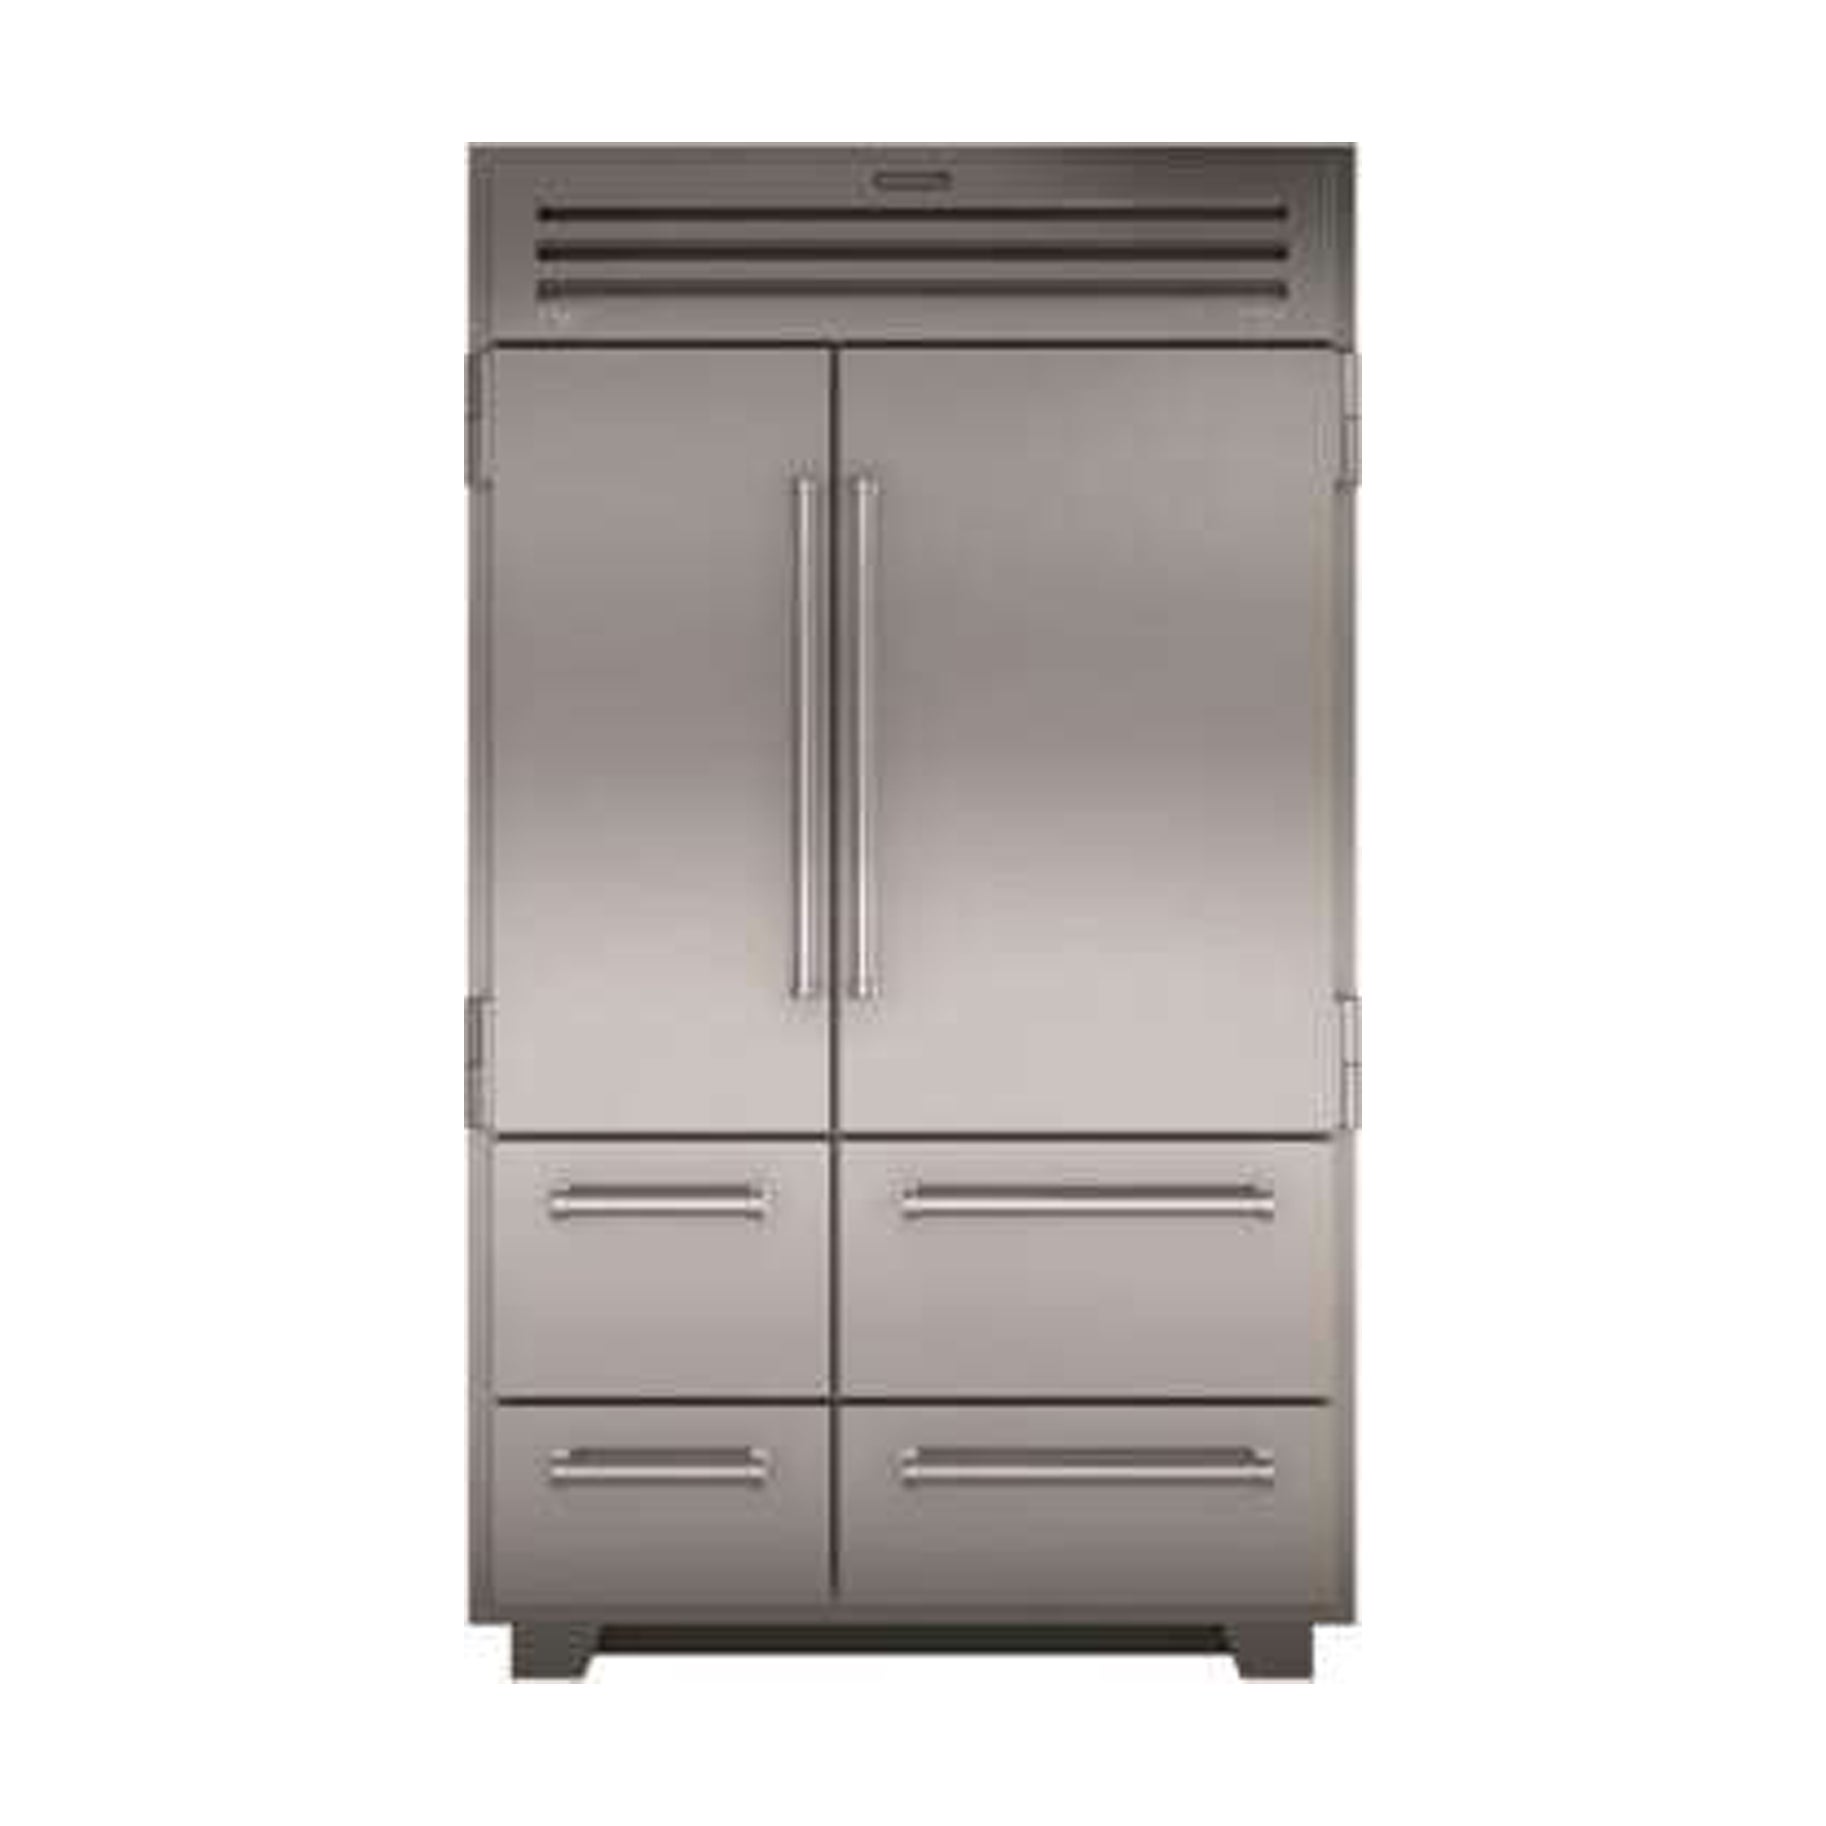 Sub Zero 48 Inch Counter Depth Refrigerator Domino